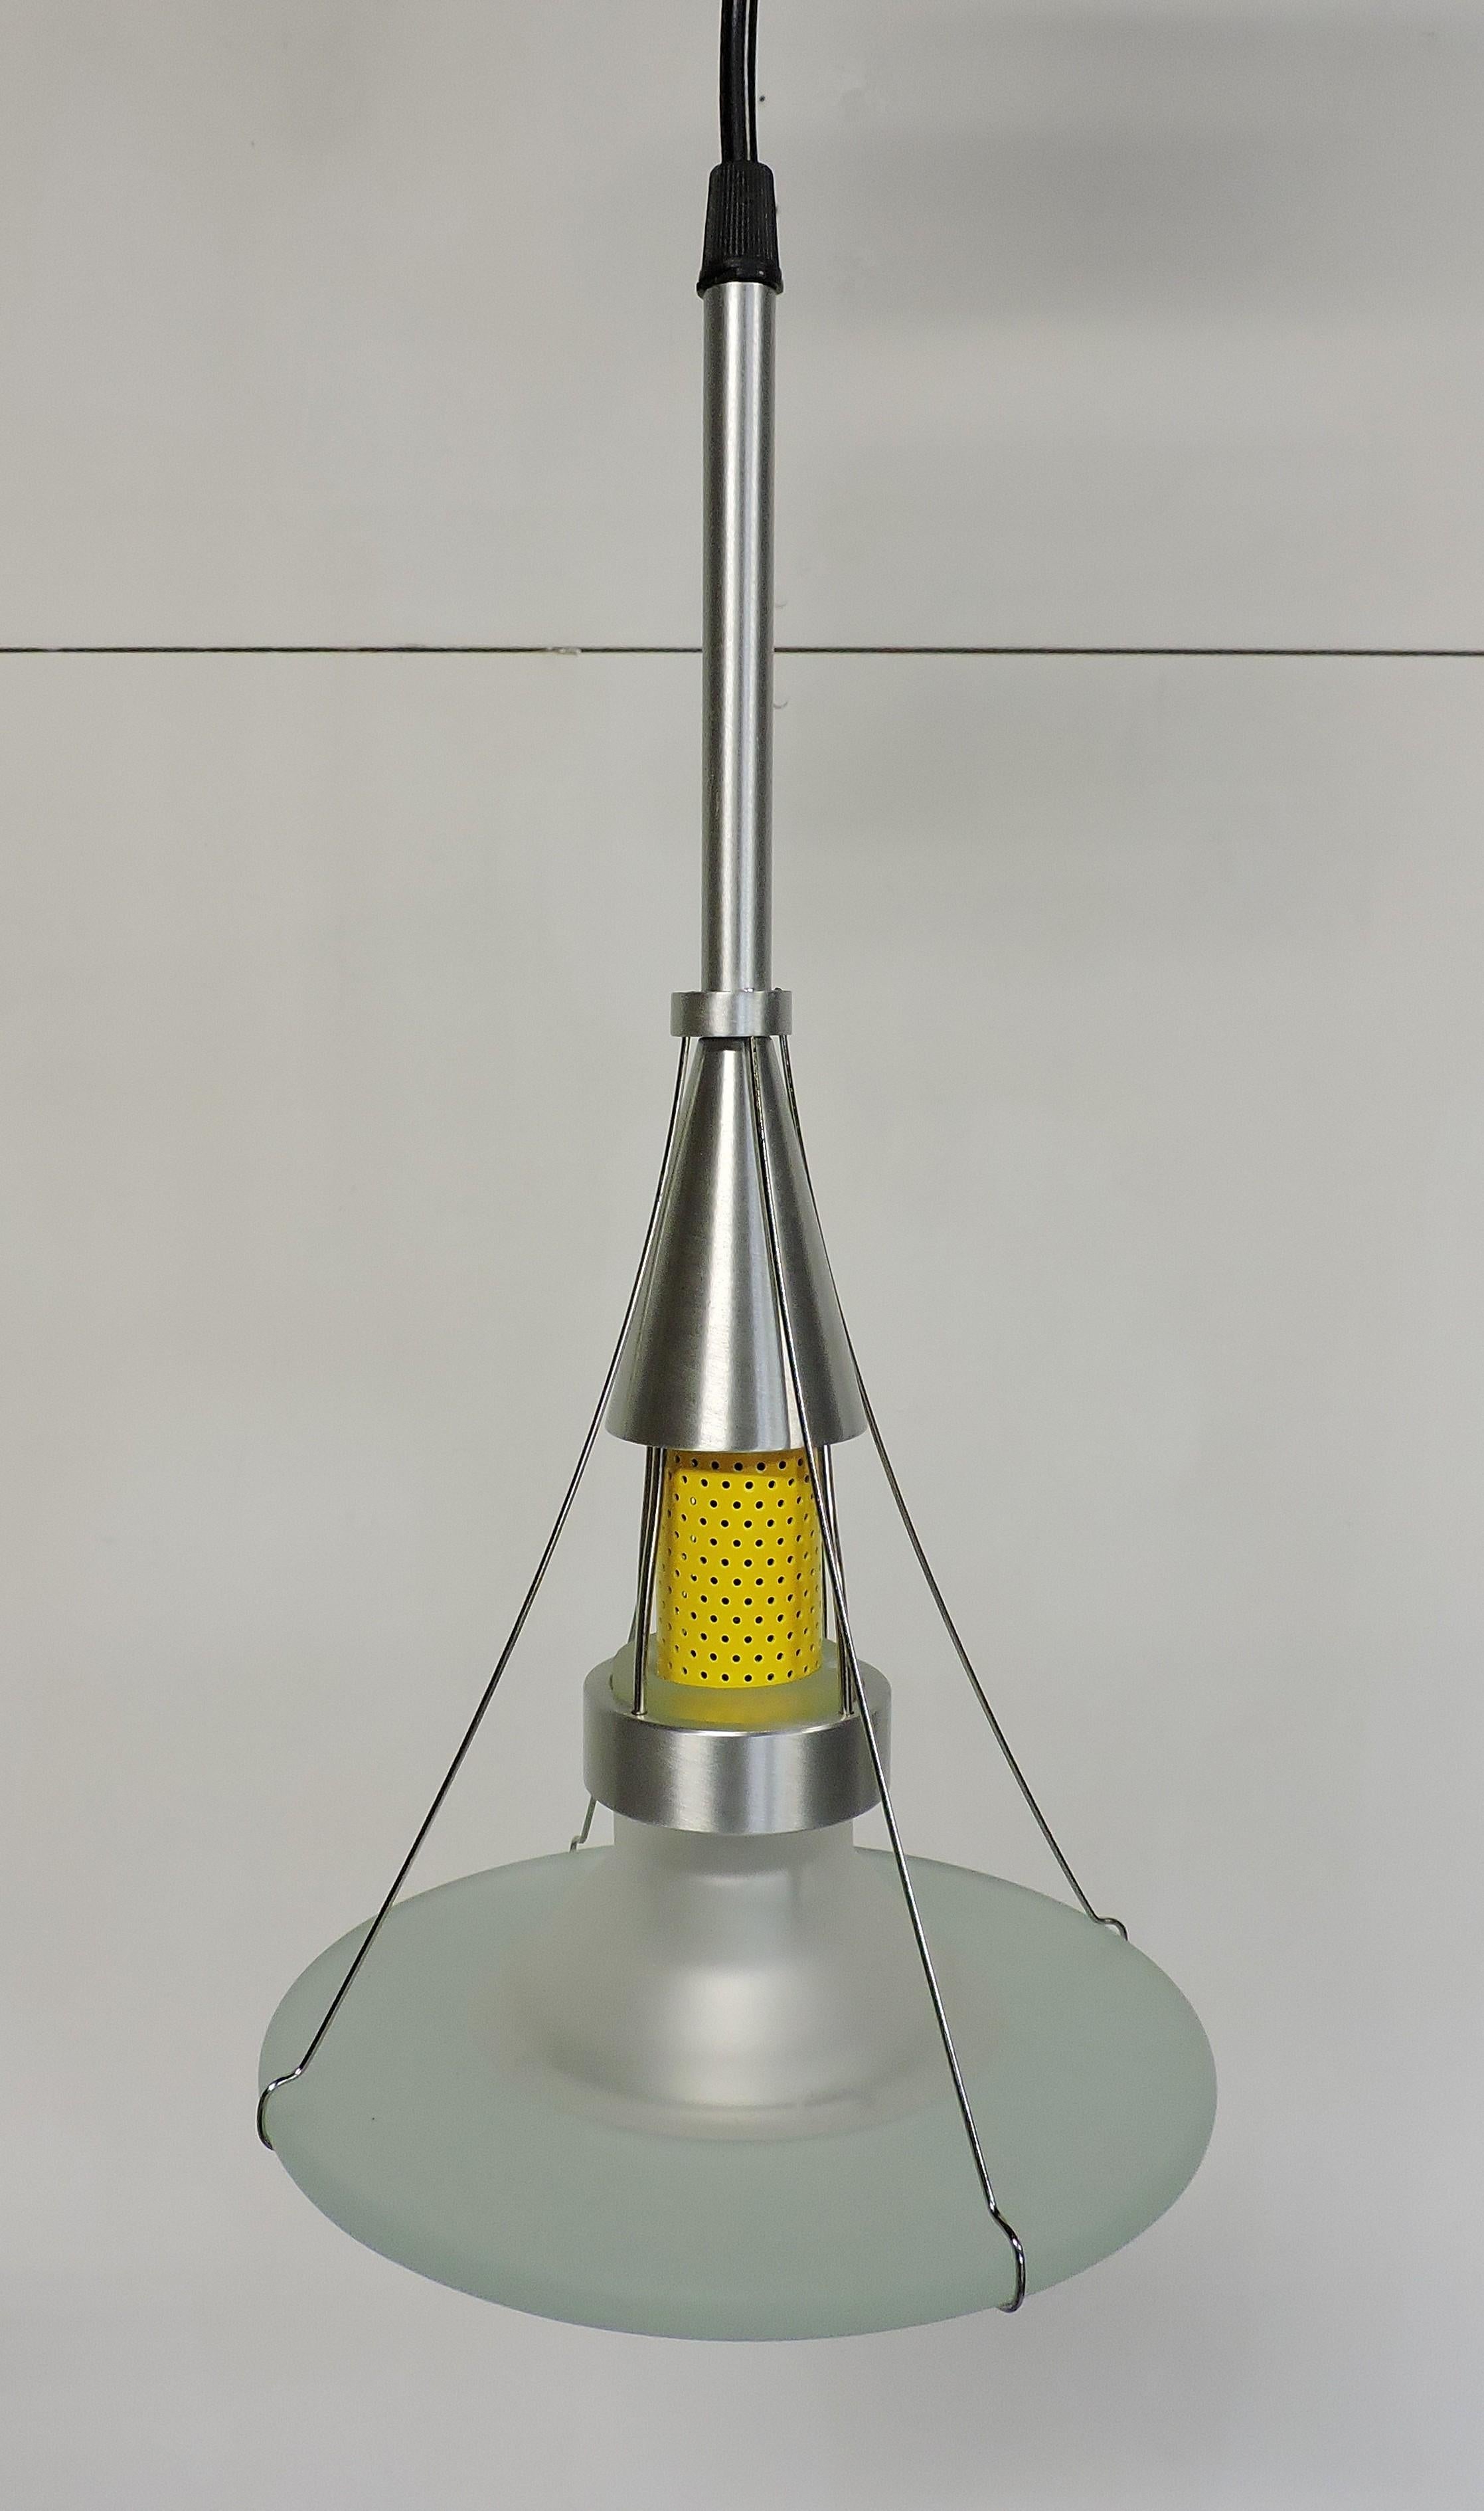 Robert Sonneman NOS Ventilator Series Postmodern Pendant Light For Sale 2